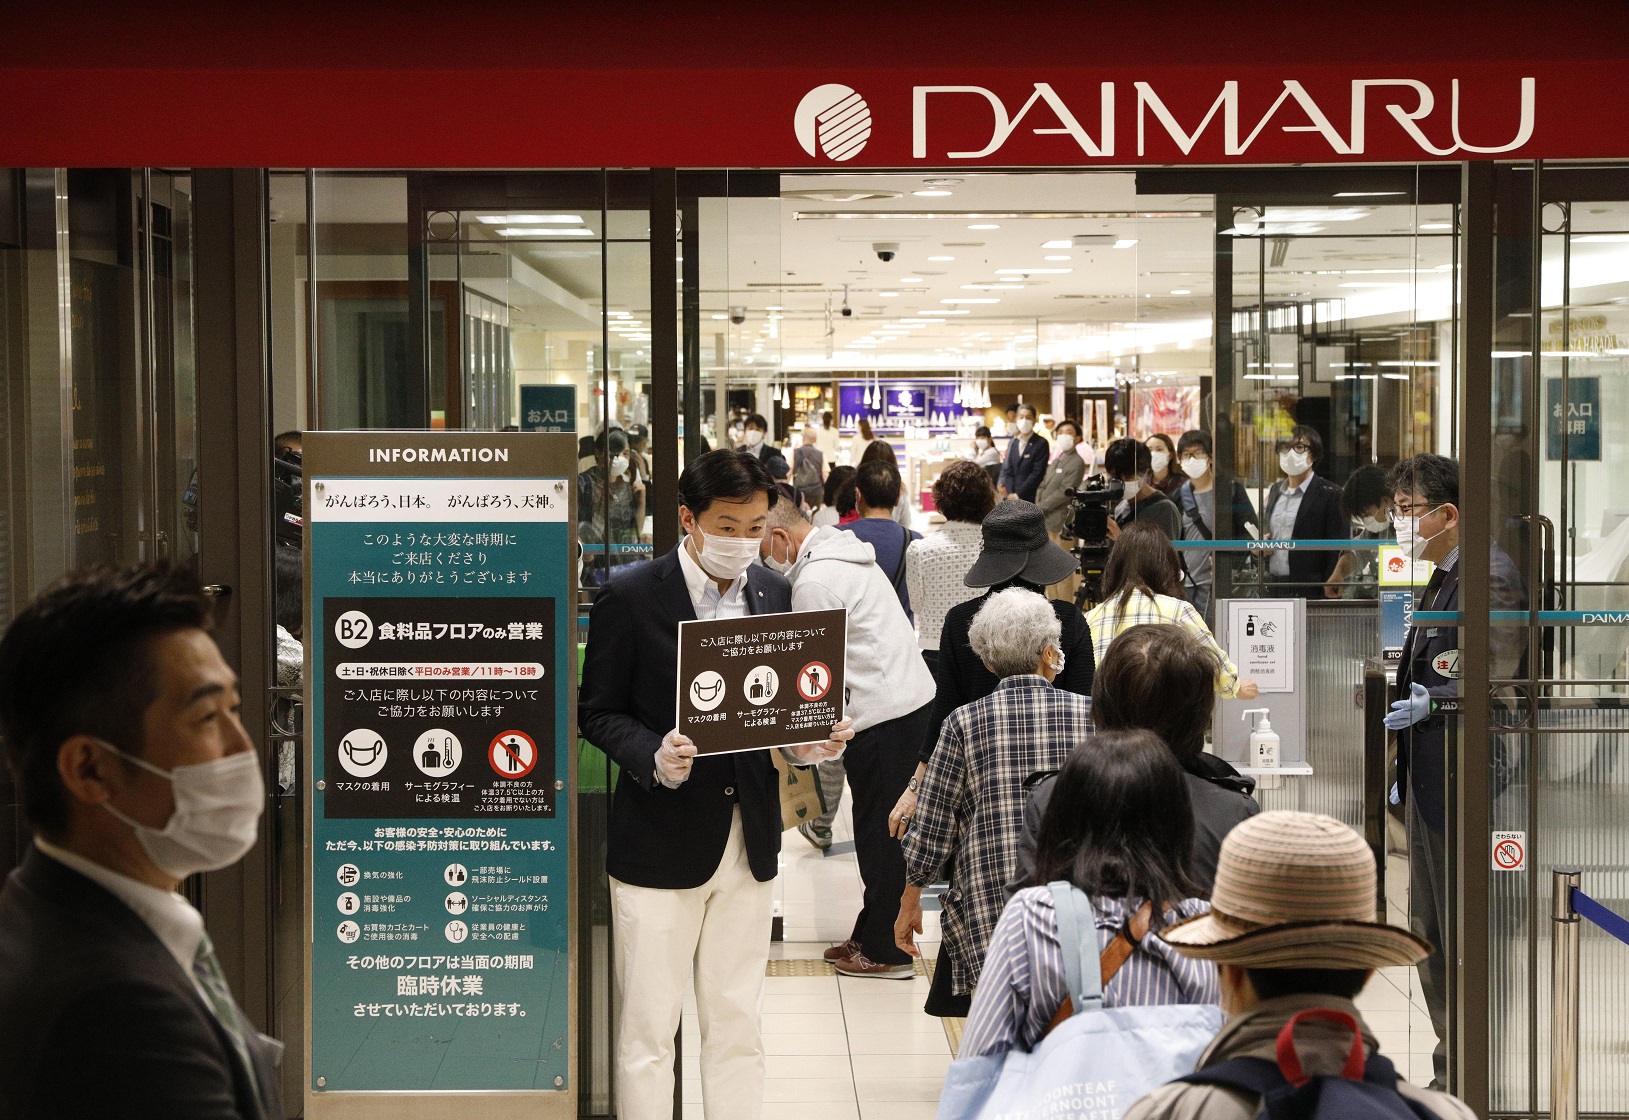 Enquanto isso, em Taiwan, a loja de departamentos Daimaru, que estava fechada desde o início de abril, volta a funcionar com novas regras de convivência. Foto The Yomiuri Shimbun via AFP 